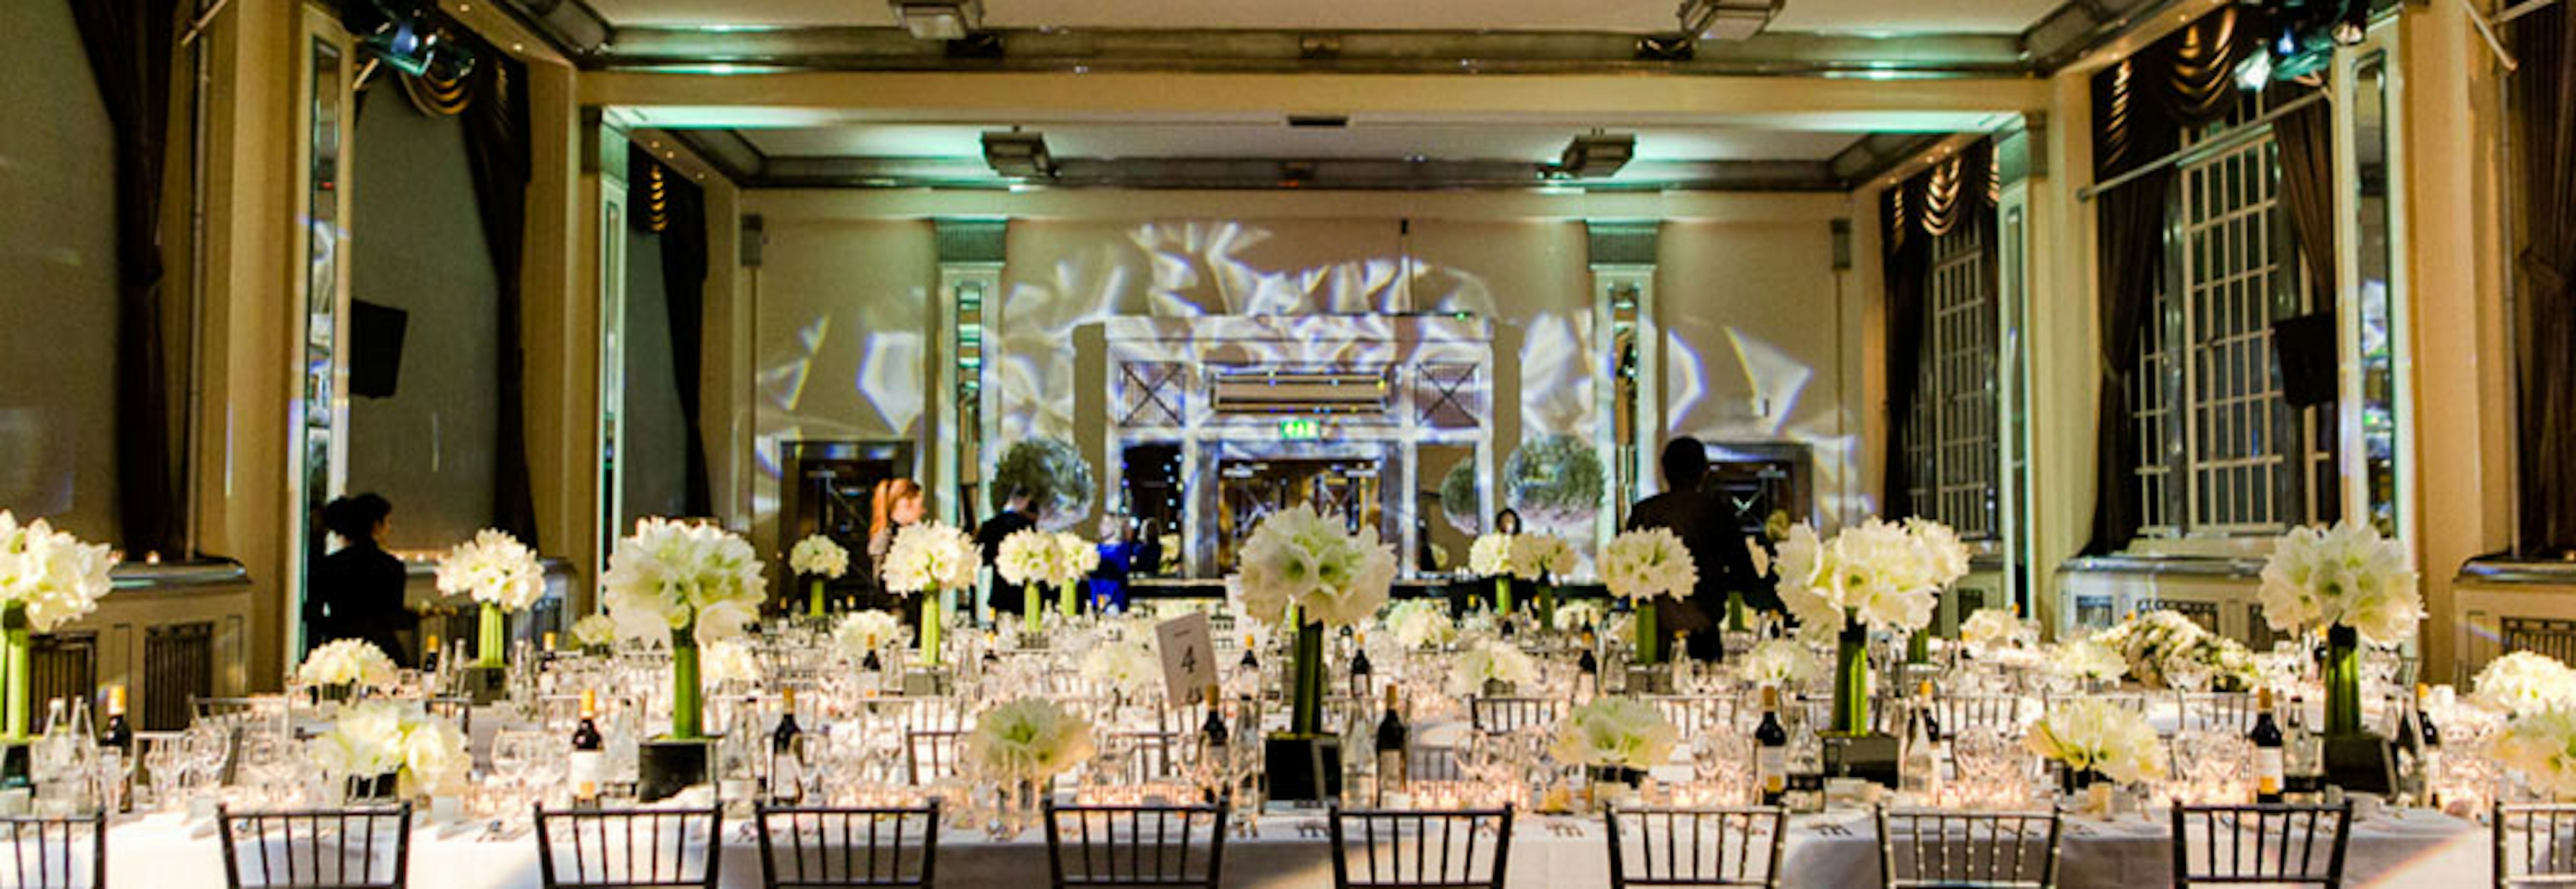 Wedding Reception Venues London